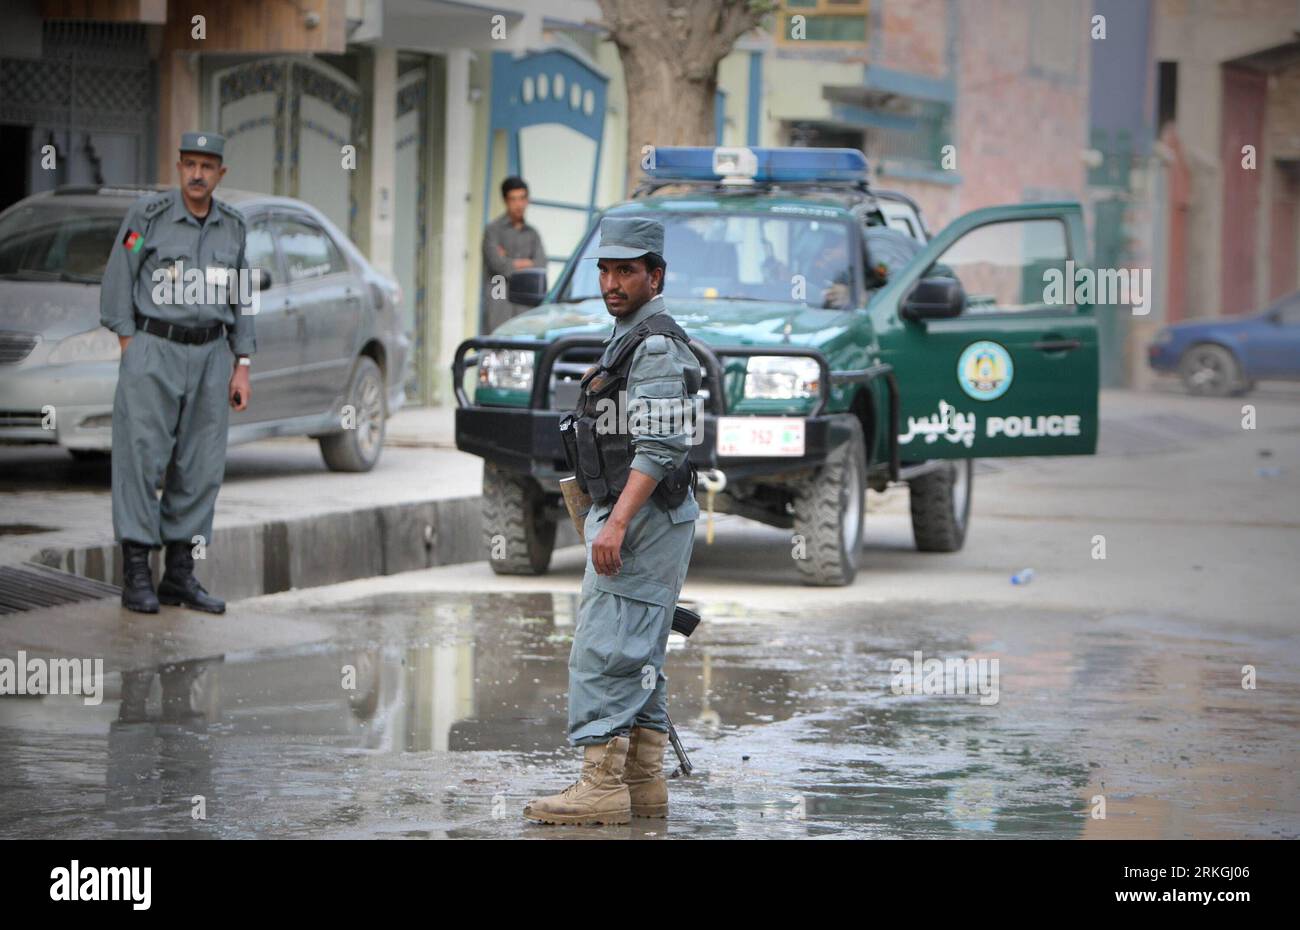 Bildnummer: 55599813 Datum: 18.07.2011 Copyright: imago/Xinhua (110718) -- KABUL, 18. Juli 2011 (Xinhua) -- afghanische Polizei wacht vor dem Haus von Jan Mohammad Khan, wo der hochrangige Berater des afghanischen Präsidenten Hamid Karzai am 18. Juli 2011 in Kabul getötet wurde. Nicht identifizierte bewaffnete Männer, die als Taliban-Kämpfer gelten, stürmten am frühen Sonntag in das Haus von Jan Mohammad Khan und erschossen Jan Mohammad Khan und seinen Gast Hashim Watanwal zu Tode. (Xinhua/Ahmad Massoud)(wn) AFGHANISTAN-KABUL-UNREST-POLITICS PUBLICATIONxNOTxINxCHN Gesellschaft Anschlag xns 2011 quer premiumd o0 Mord Polizei Pol Stockfoto